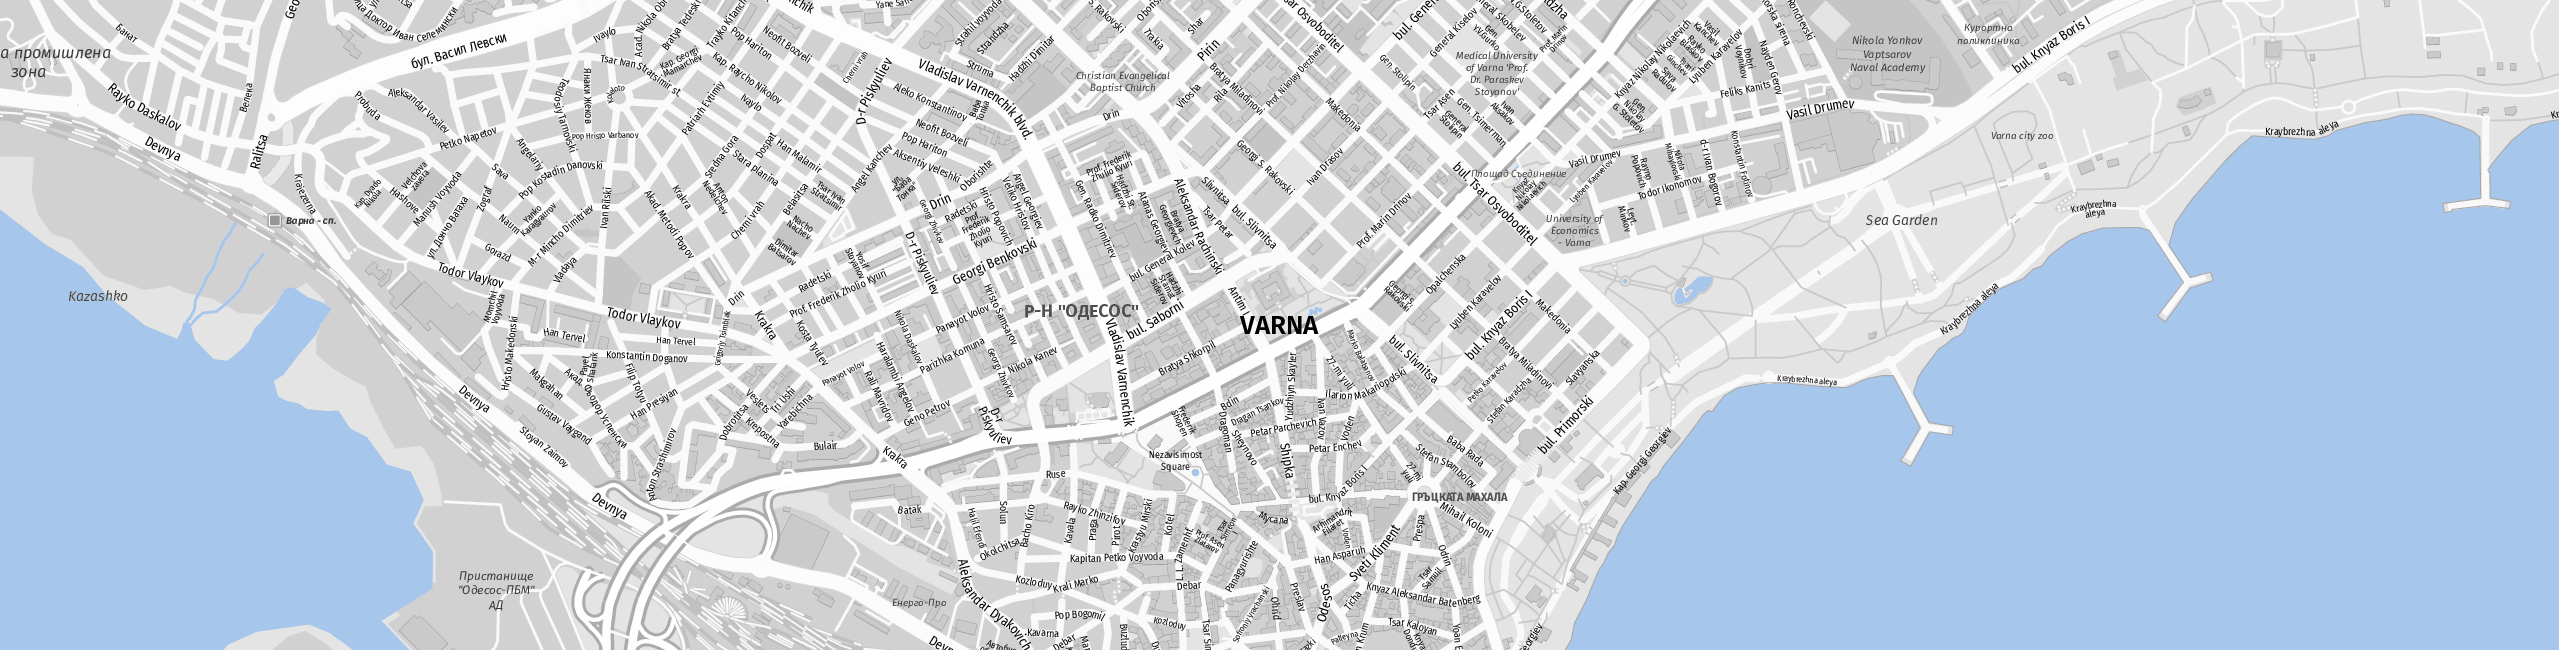 Stadtplan Varna zum Downloaden.